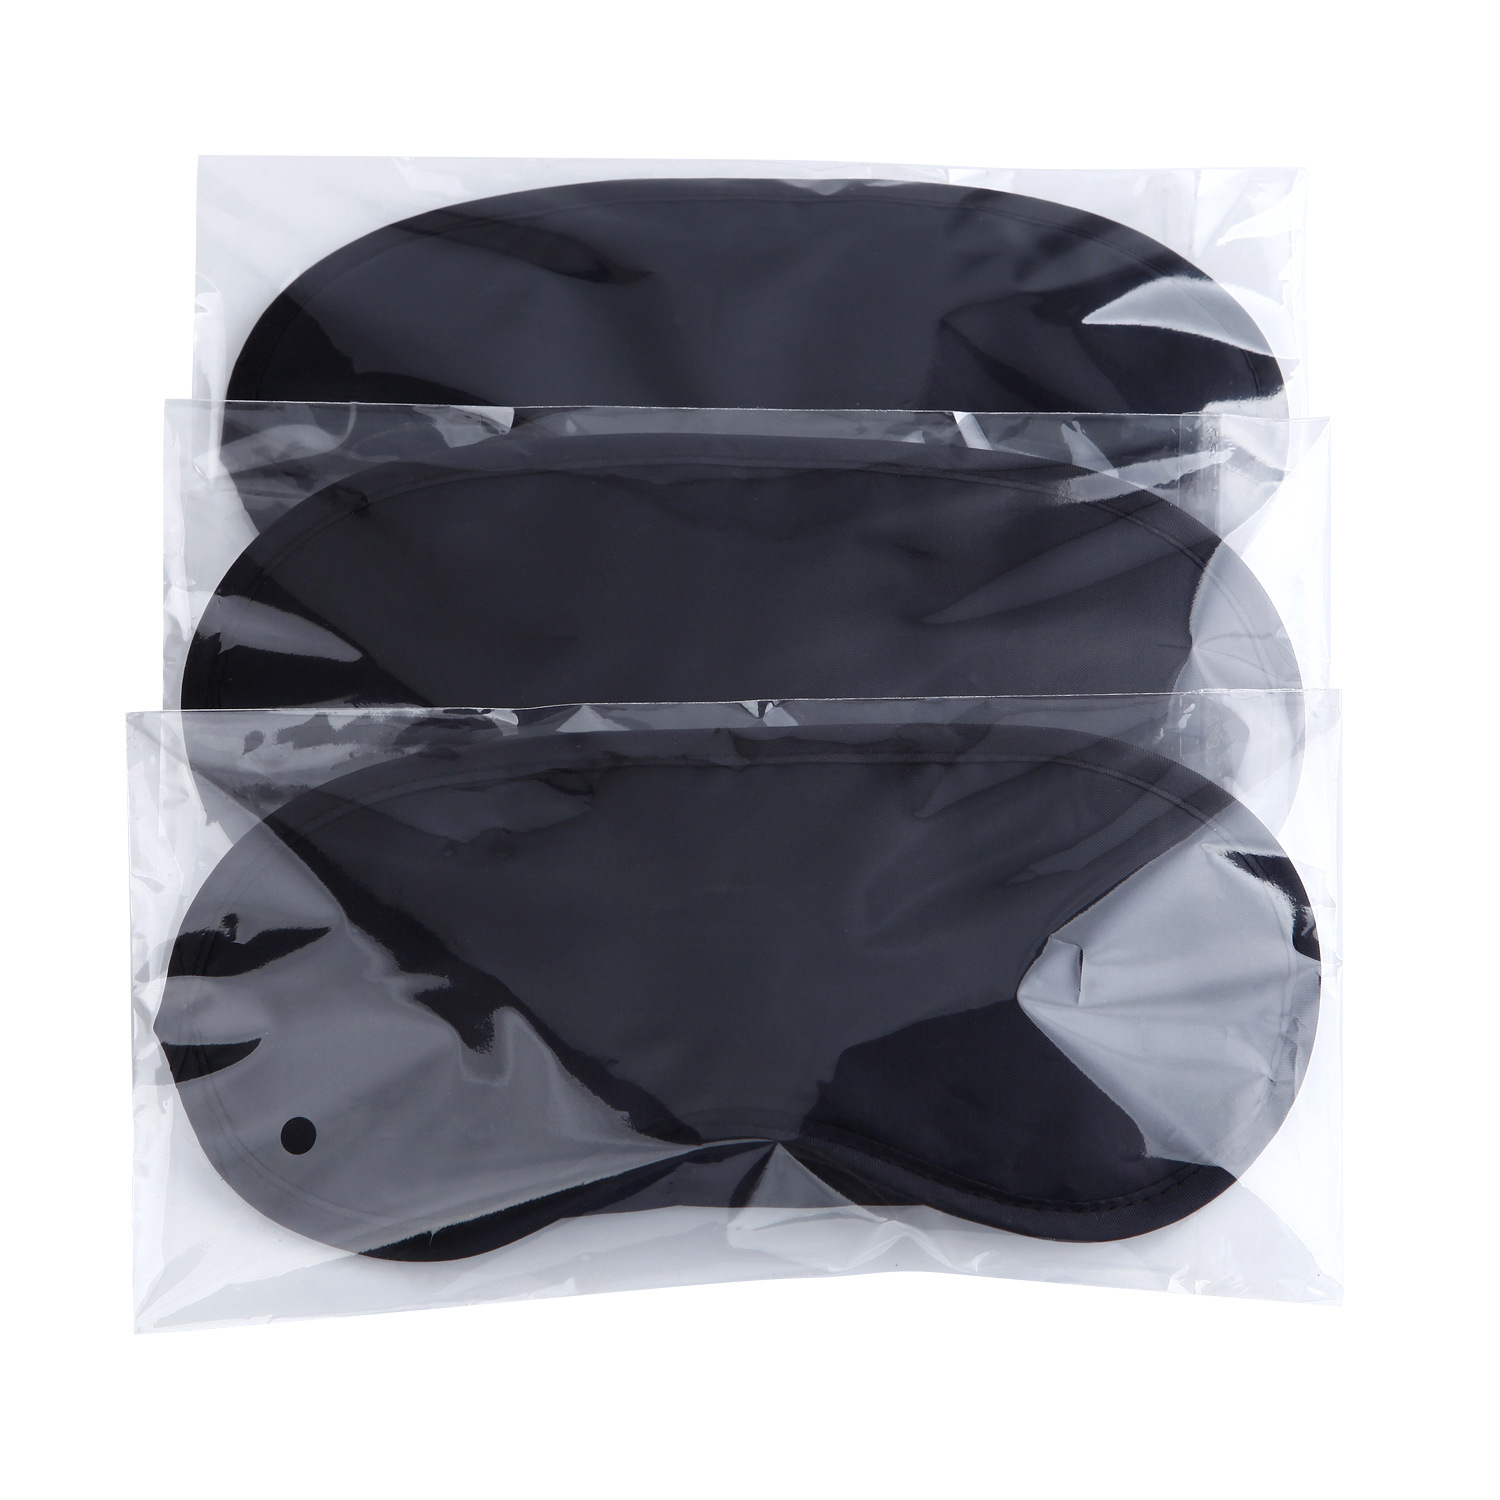 遮光透气护眼罩涤纶眼罩平铺包装拓展培训活动睡眠眼罩礼品批发